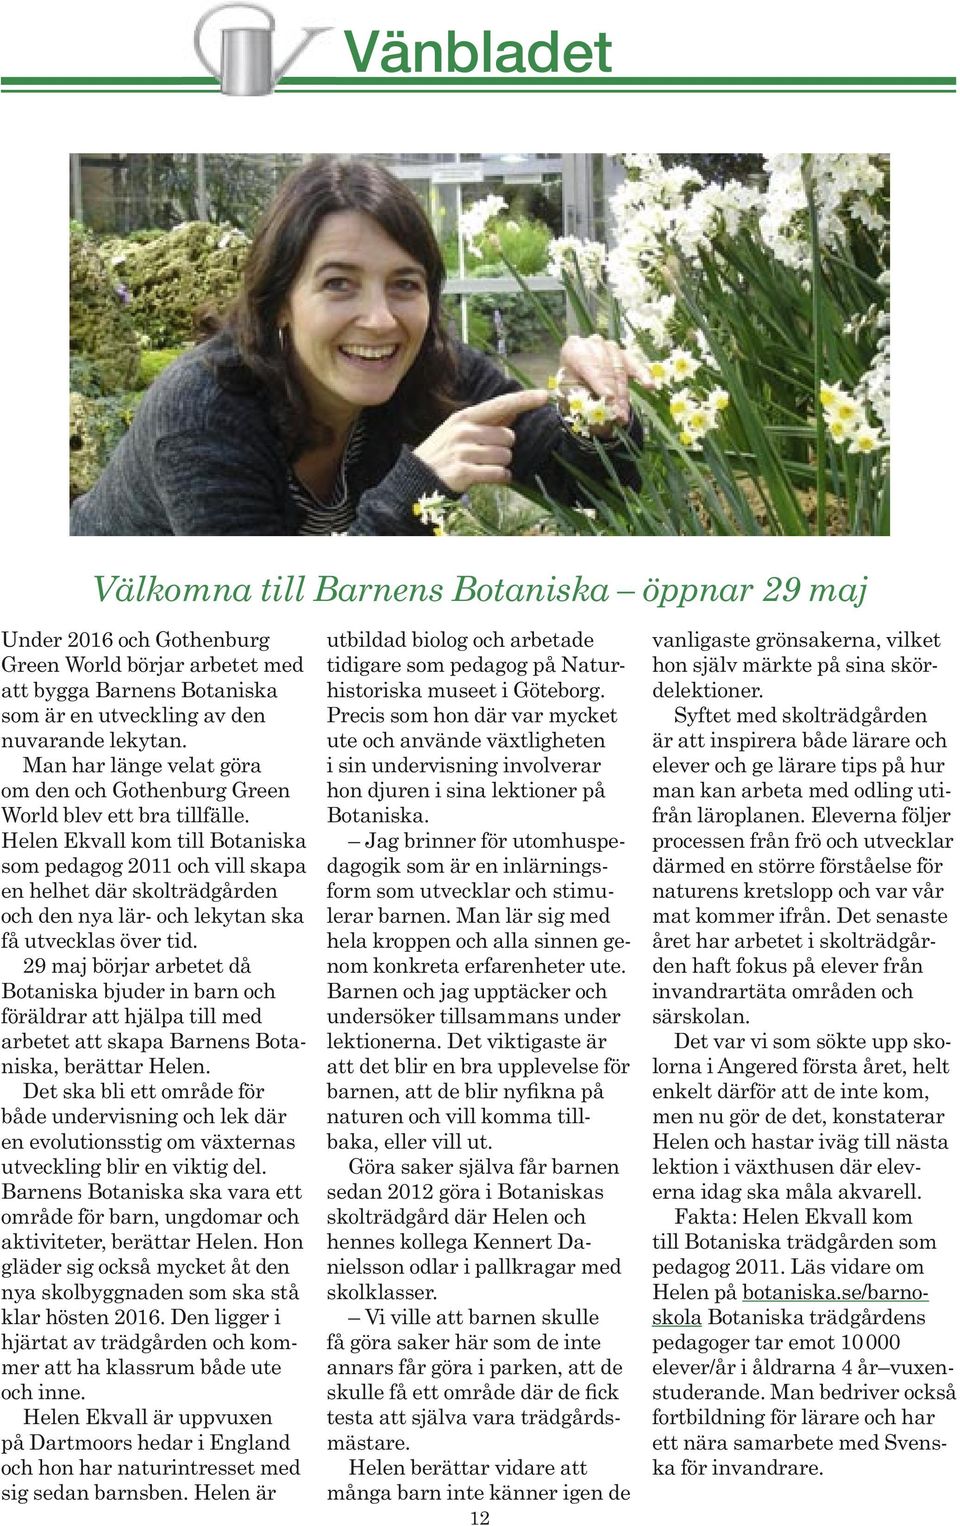 Helen Ekvall kom till Botaniska som pedagog 2011 och vill skapa en helhet där skolträdgården och den nya lär- och lekytan ska få utvecklas över tid.